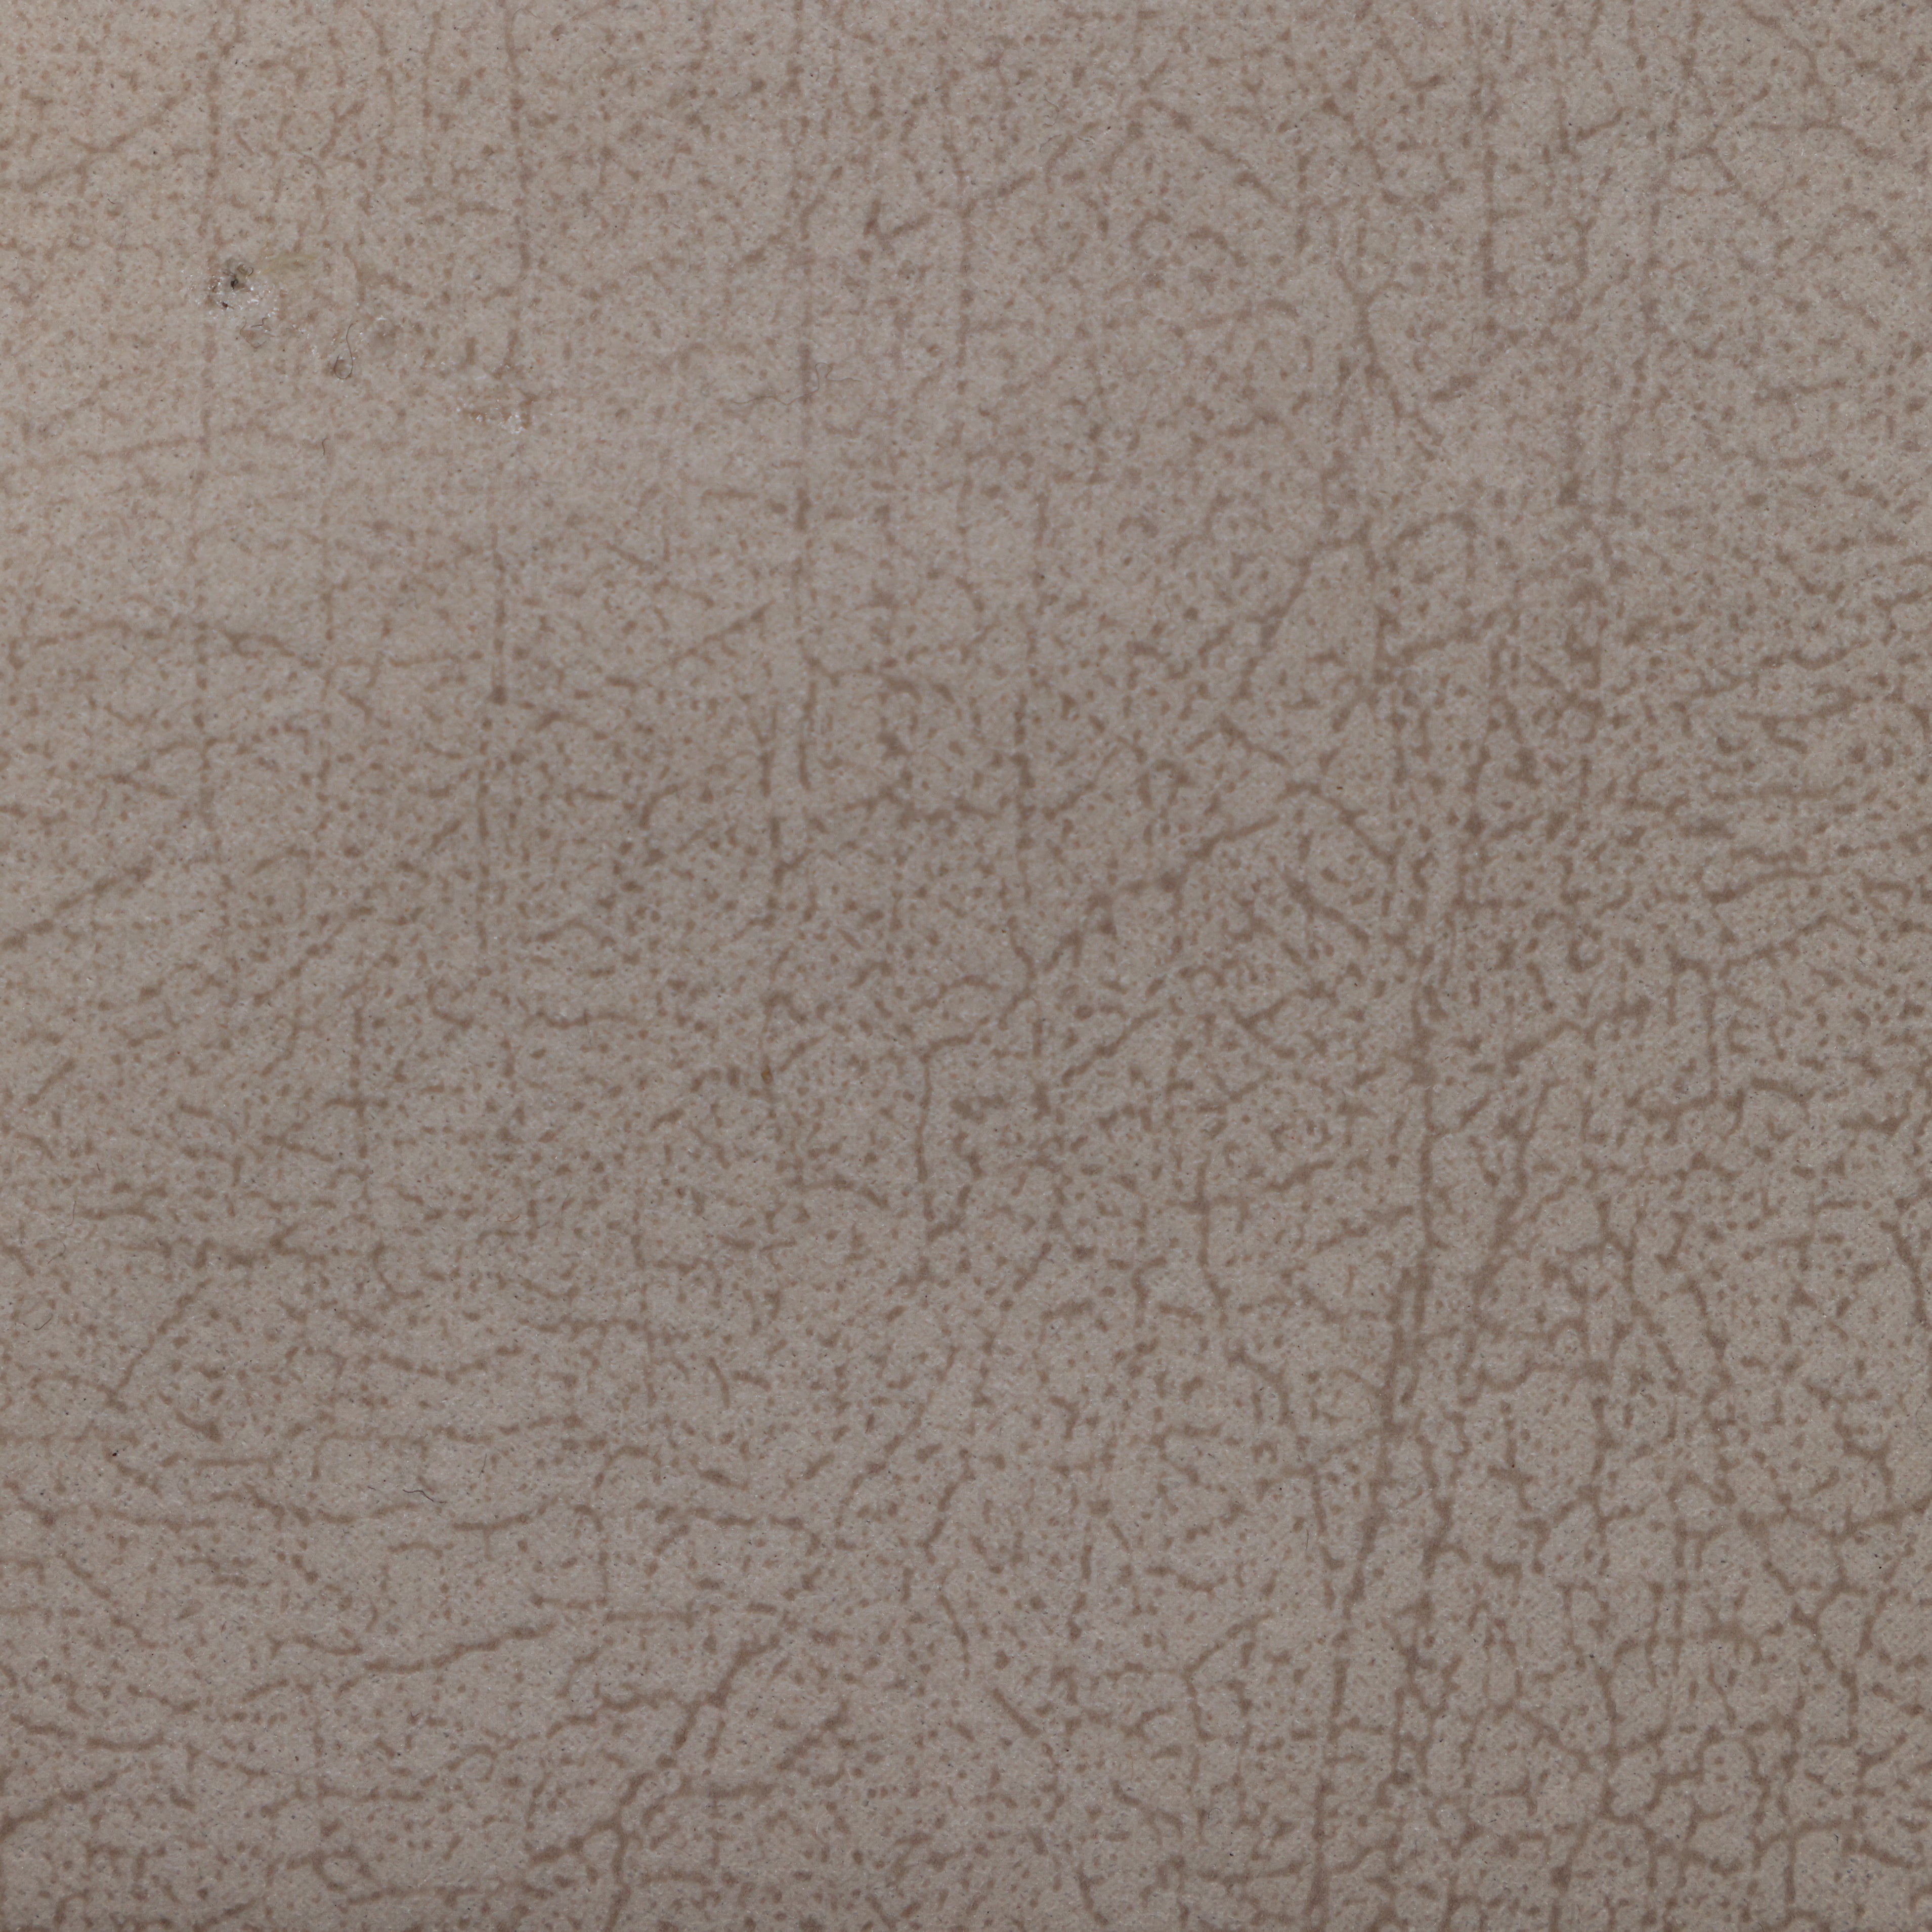 قماش جلد مقلوب 0225 - Damson Furnitureقماش جلد مقلوب 0225